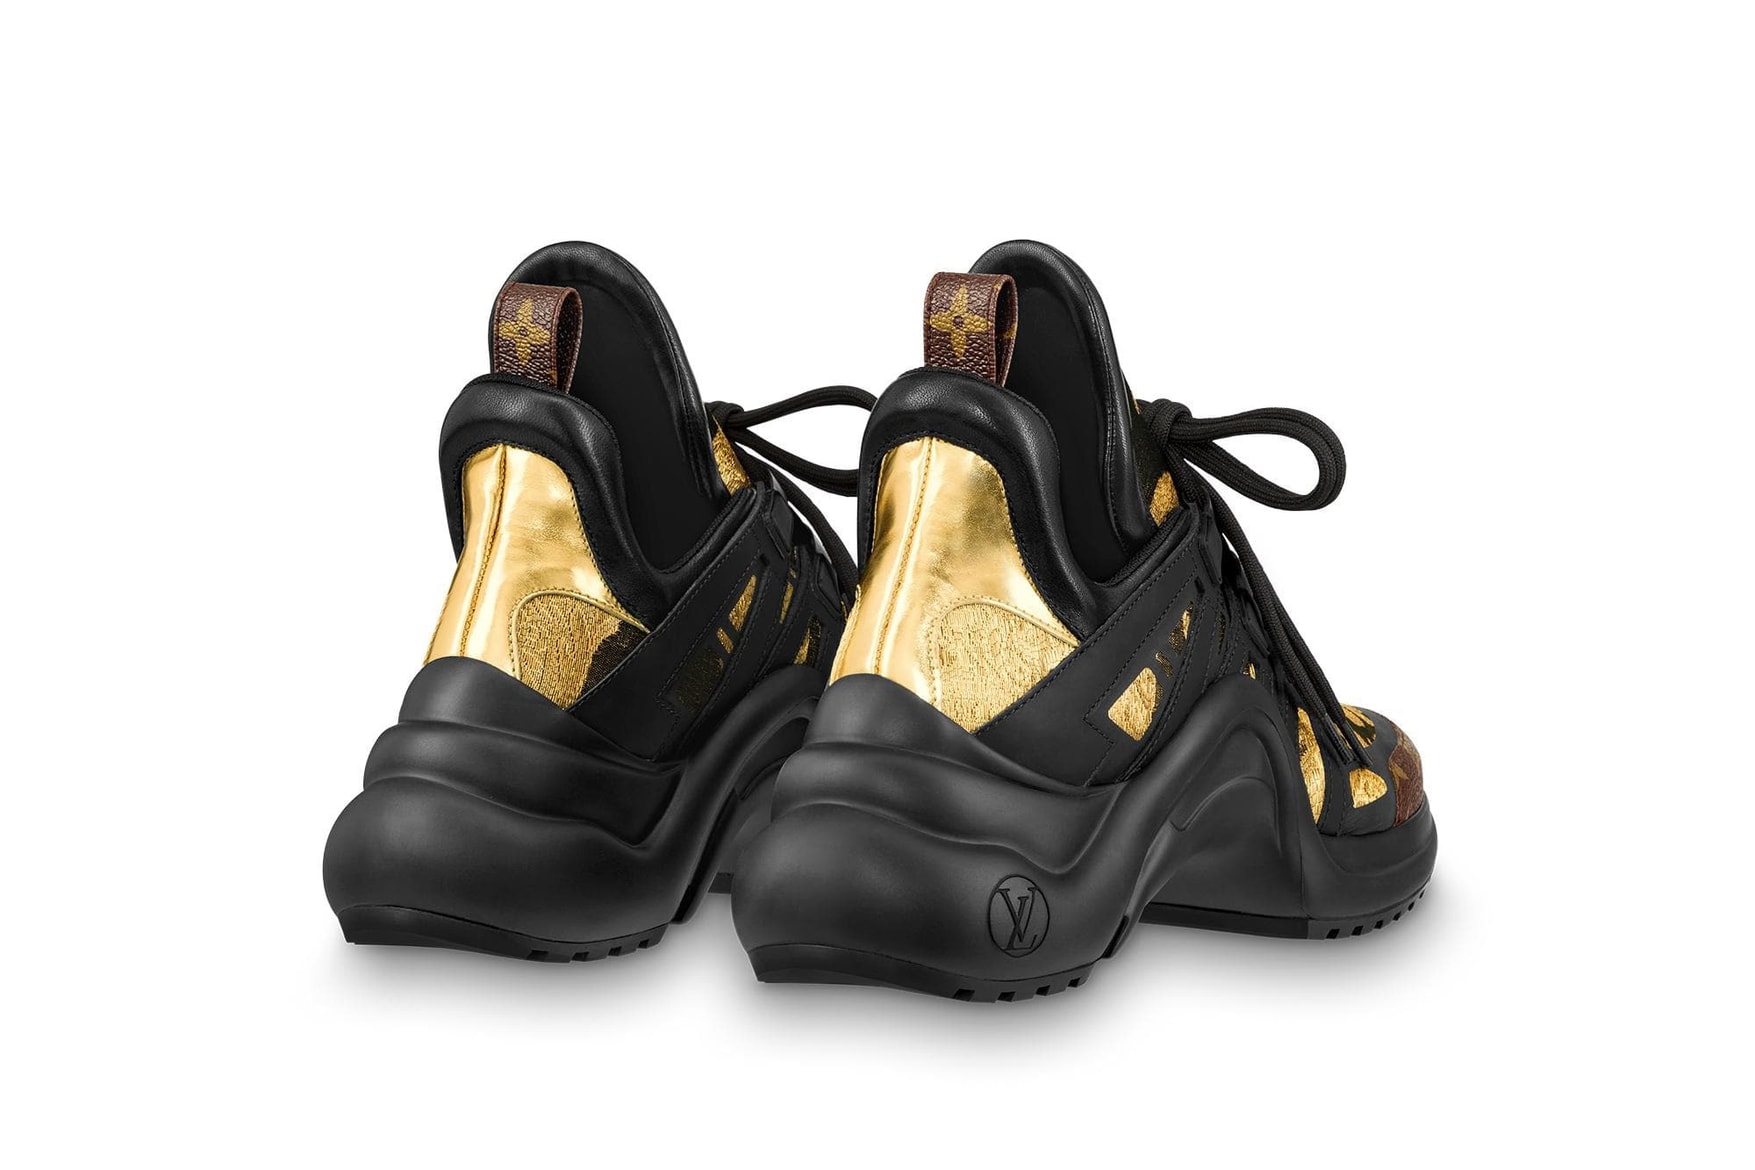 LV Archlight Sneaker - Schuhe 1A43LH